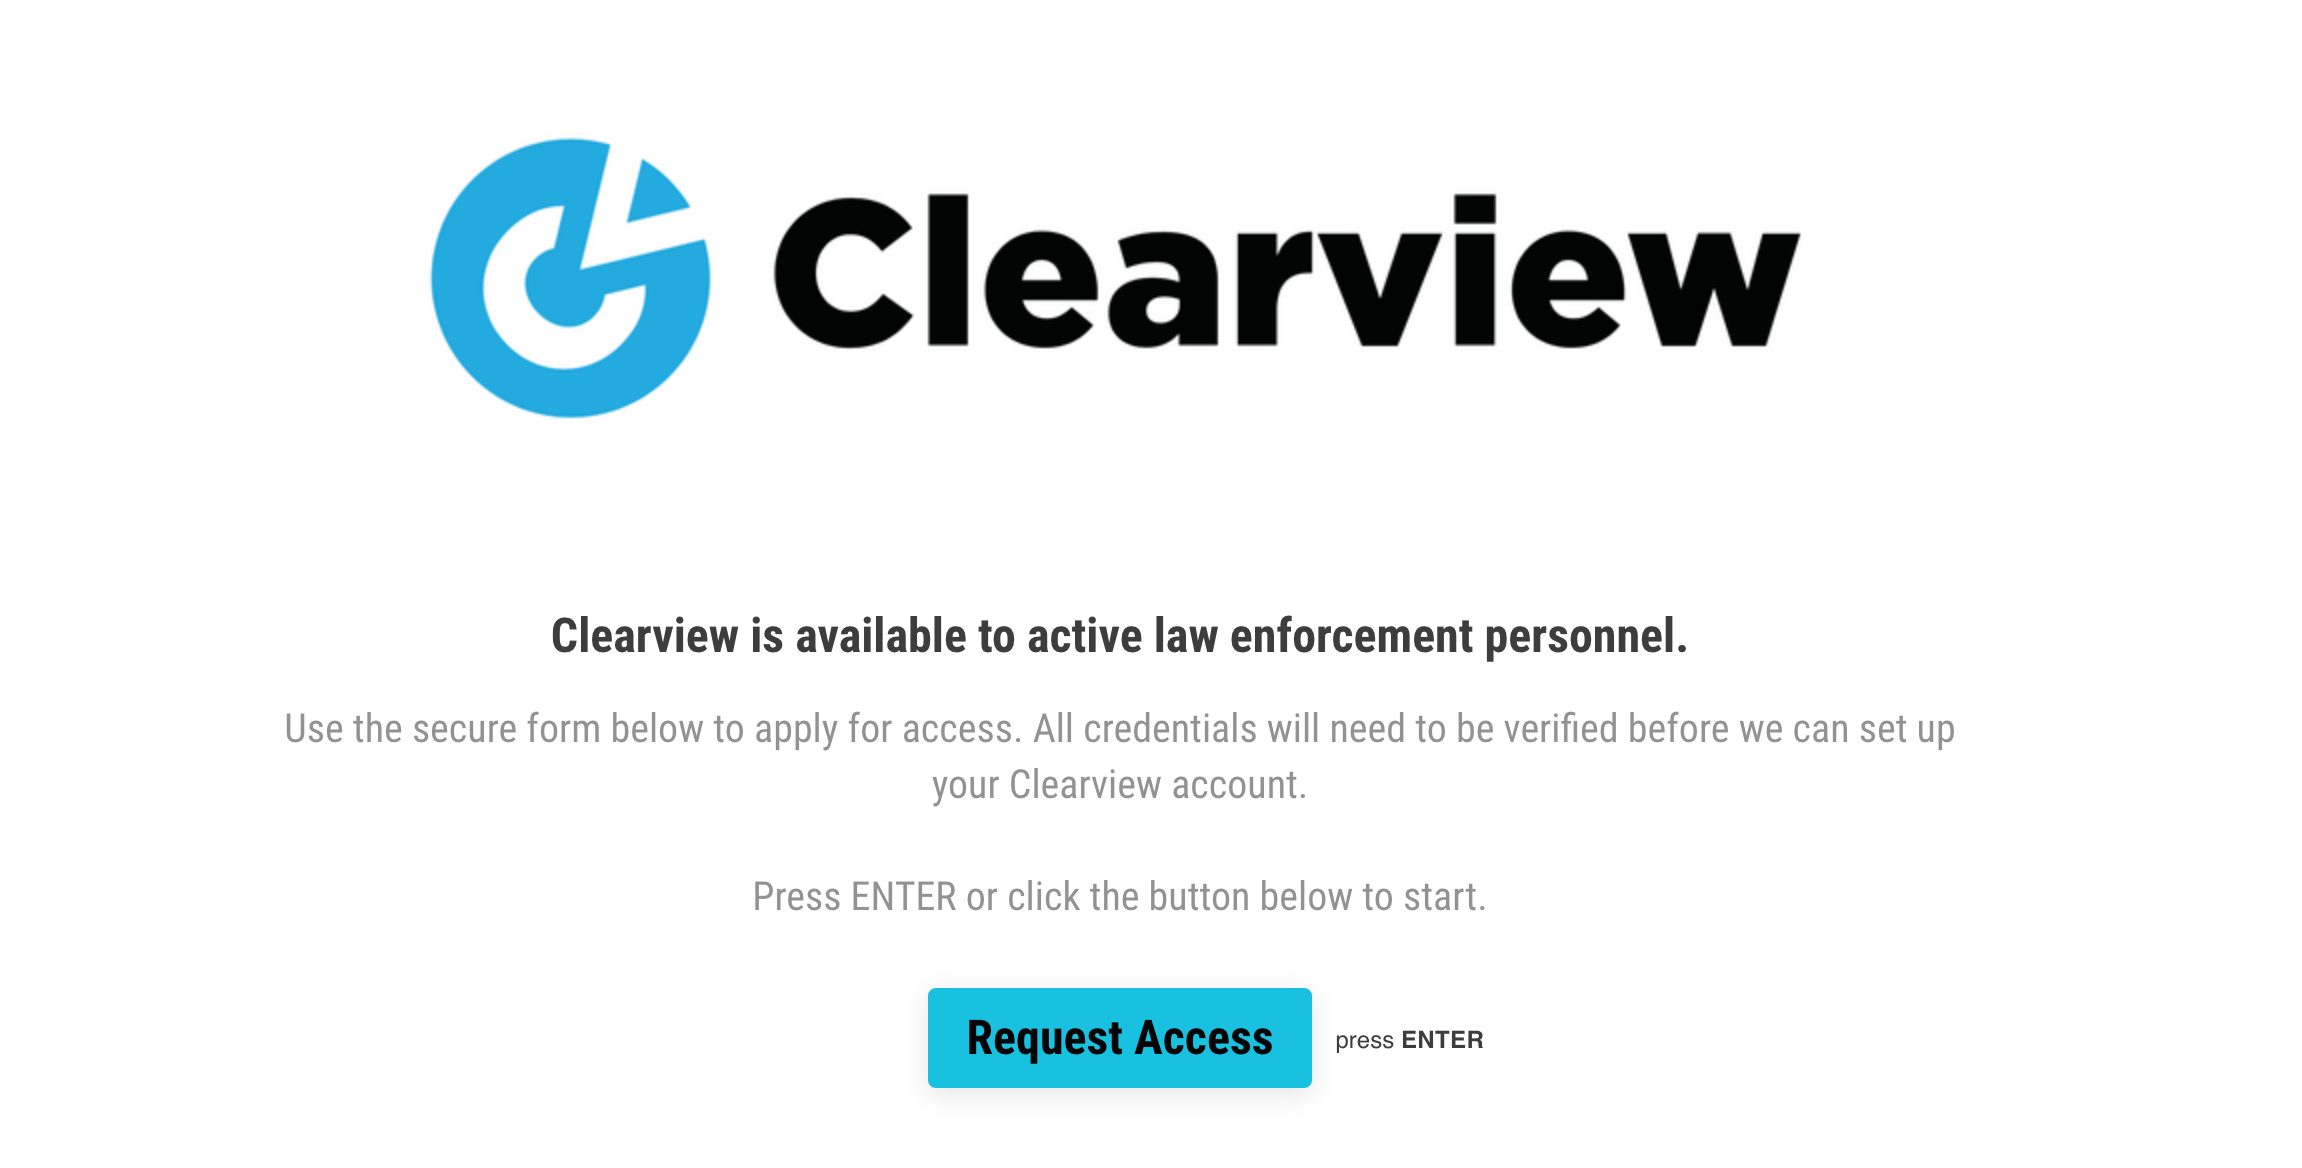 Clearview prétend qu'il faut un email lié à une agence des forces de l'ordre pour accéder à son logiciel. // Source : Capture d'écran du site de Clearview